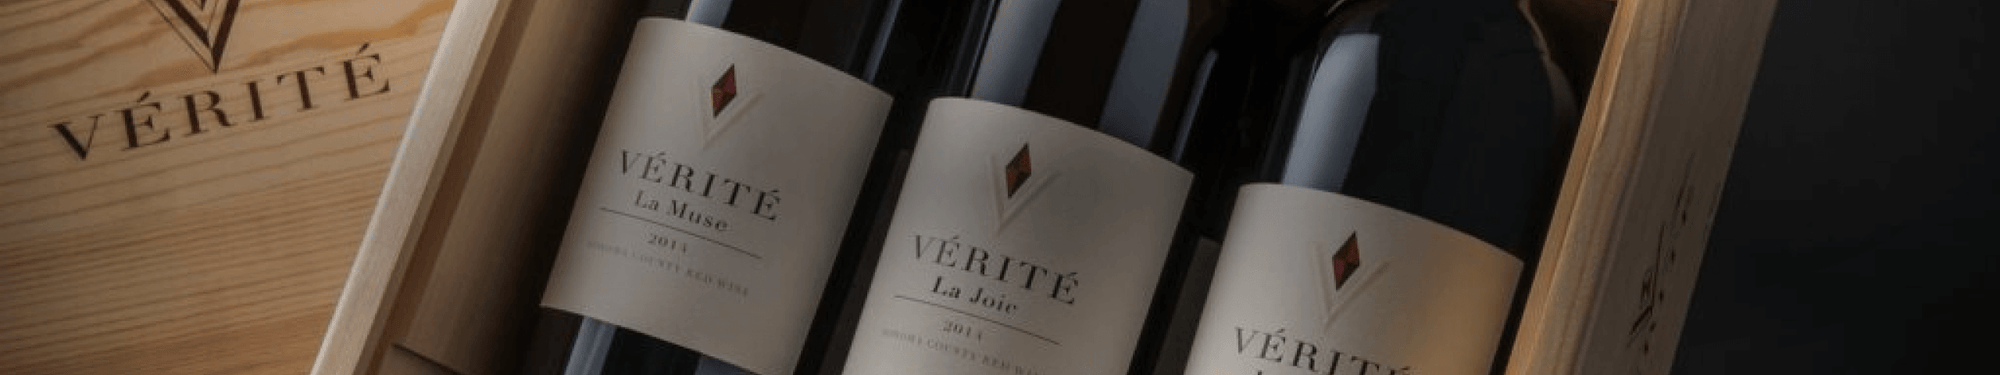 Verite Winery - Sonoma County